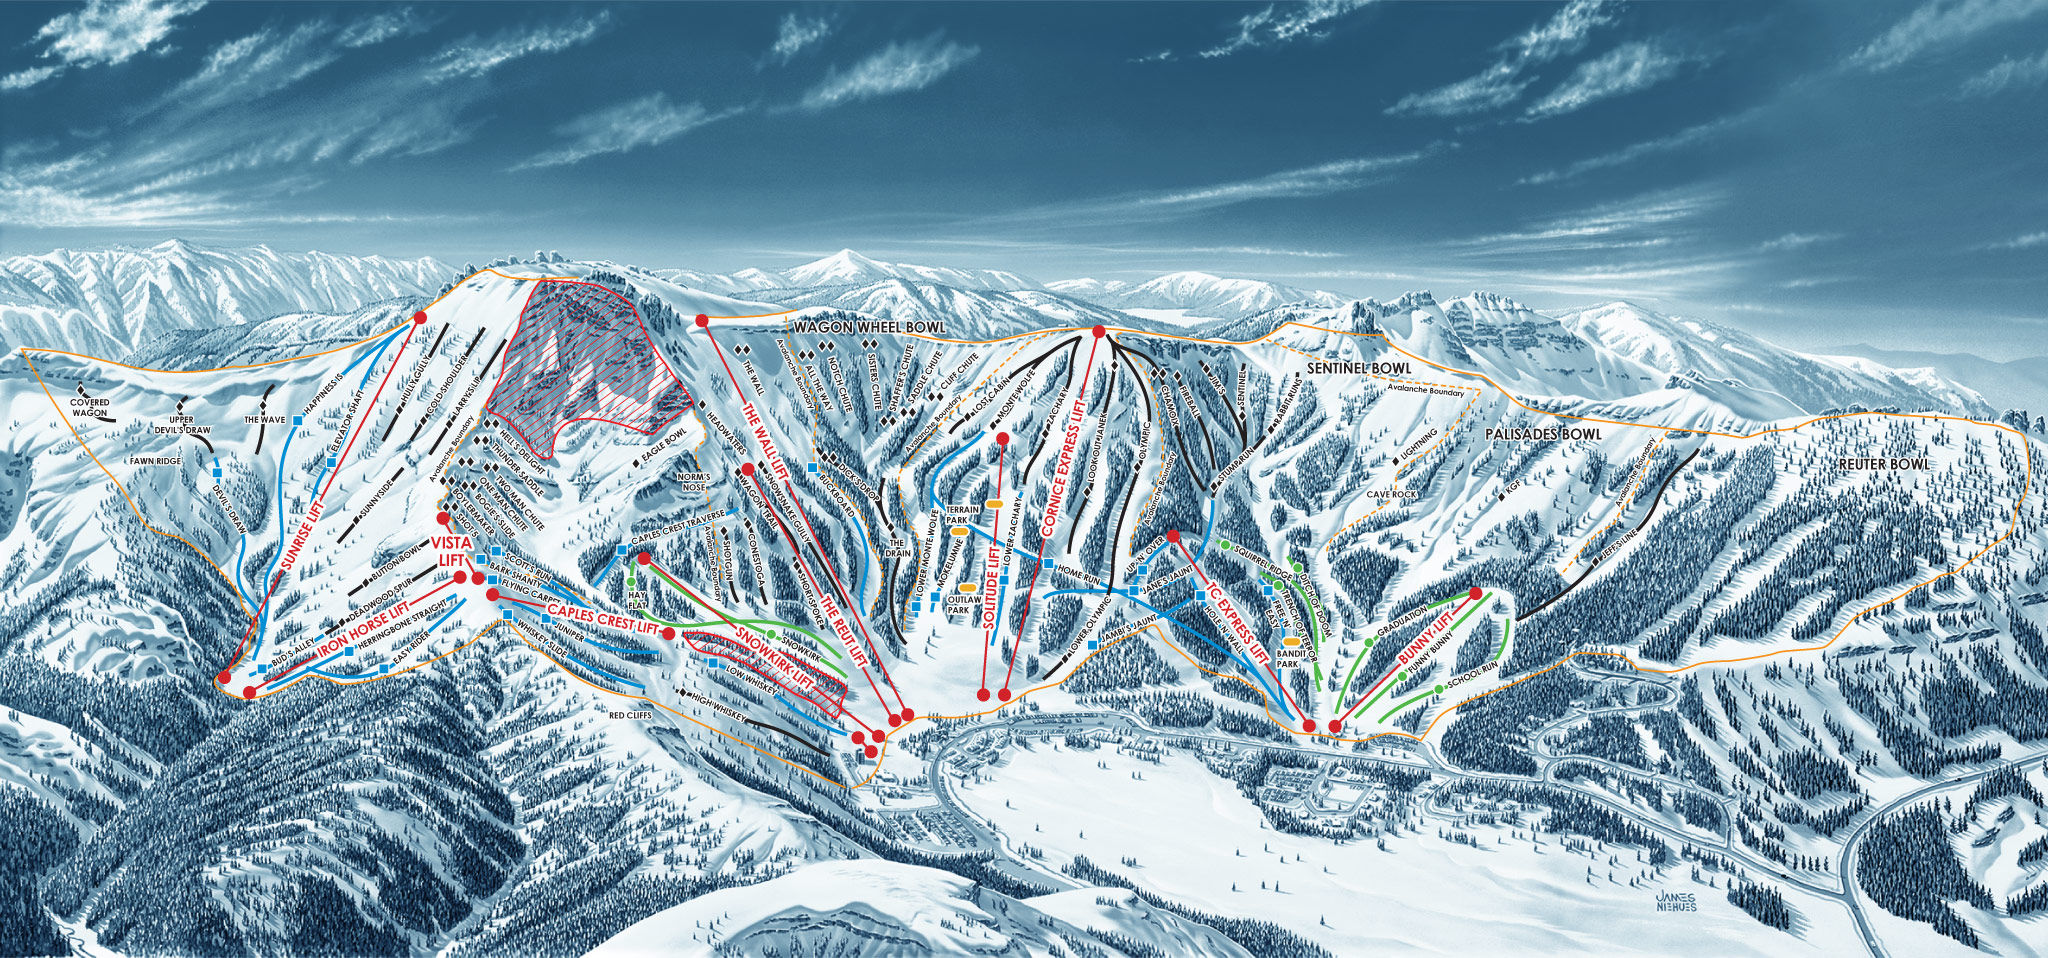 Trail Map Kirkwood Ski Resort | vlr.eng.br